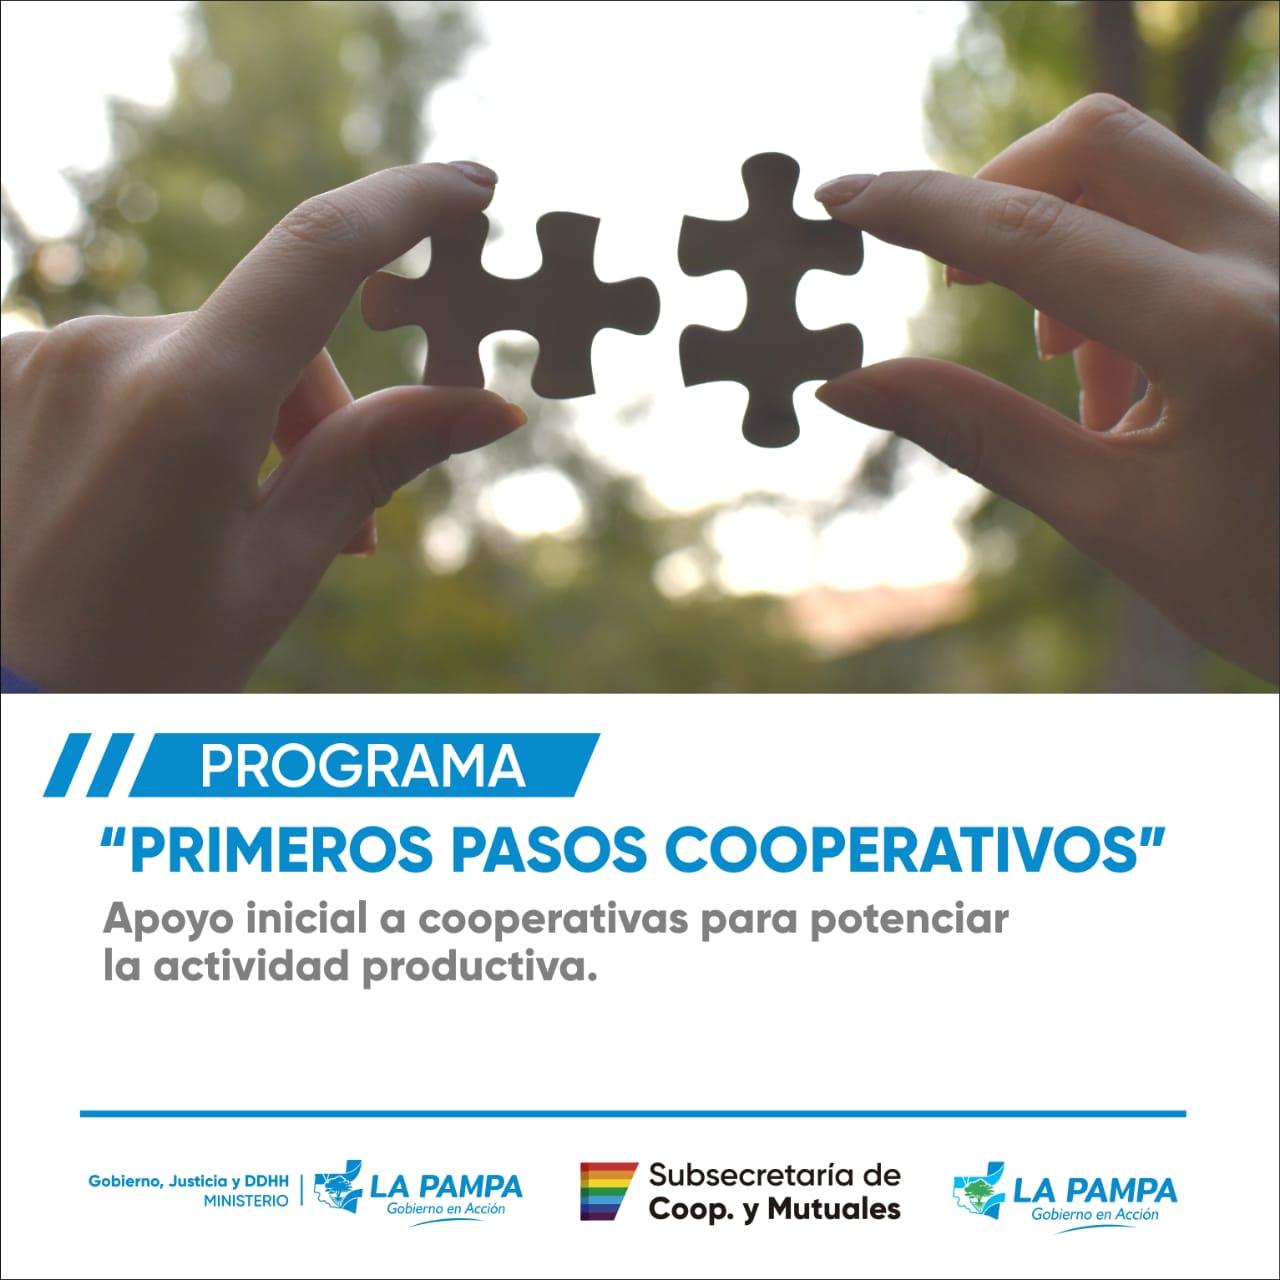 Programa “Primeros Pasos Cooperativos”: buscan potenciar la actividad productiva 